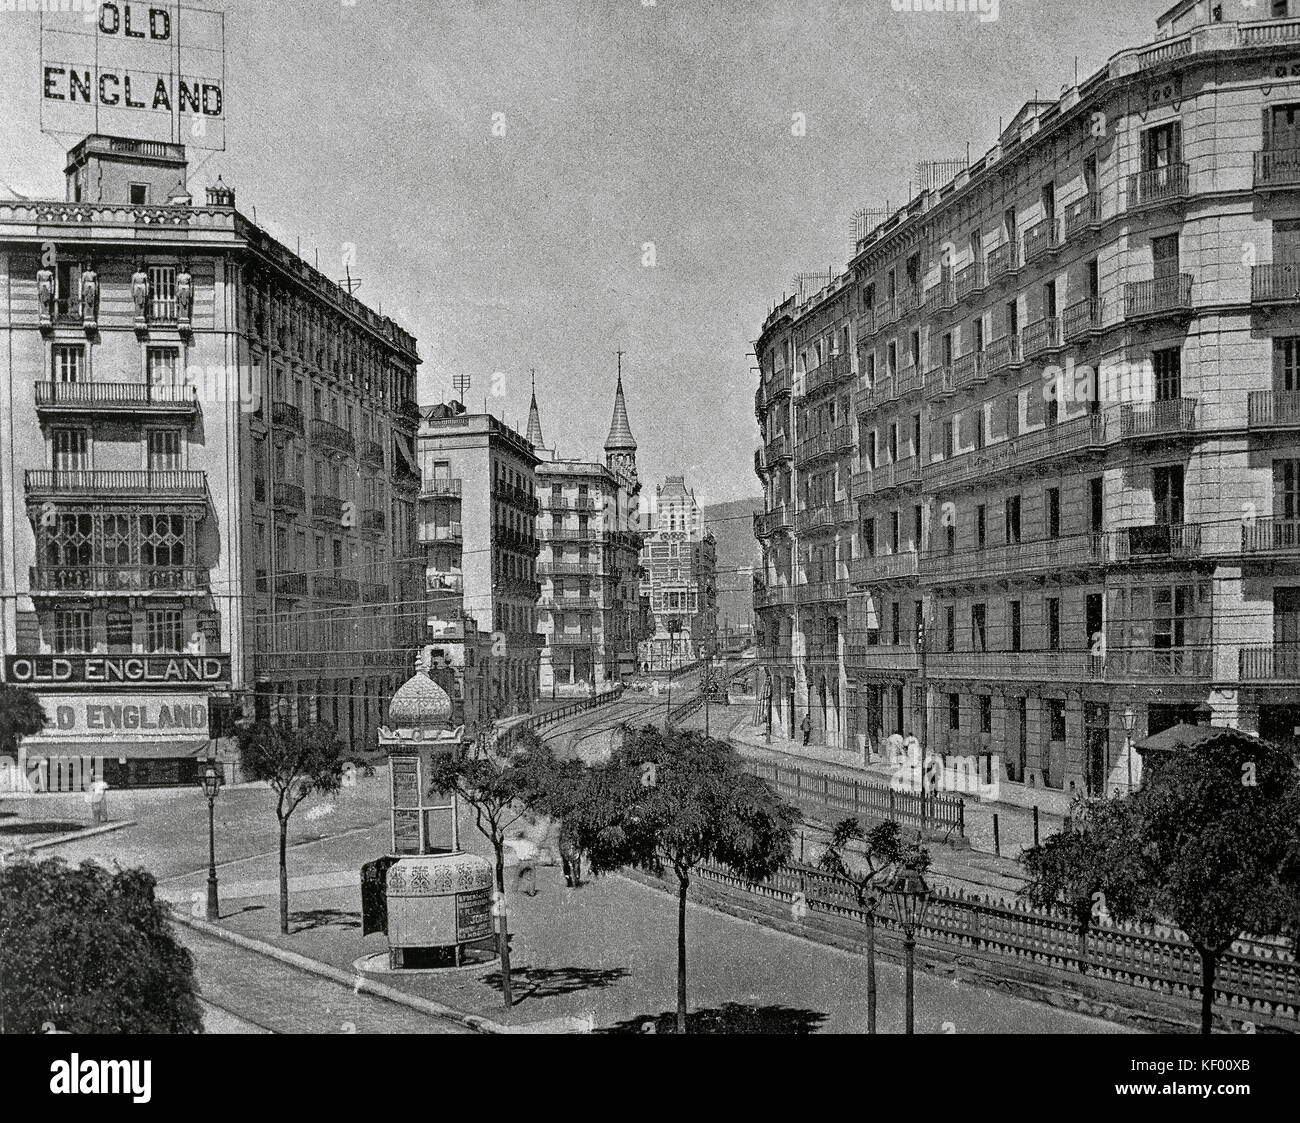 Espagne Catalogne Barcelone... fin du 19ème siècle. rue Balmes avec le chemin de fer de Sarria. dans l'angle, la vieille Angleterre magasin. la photographie. Banque D'Images